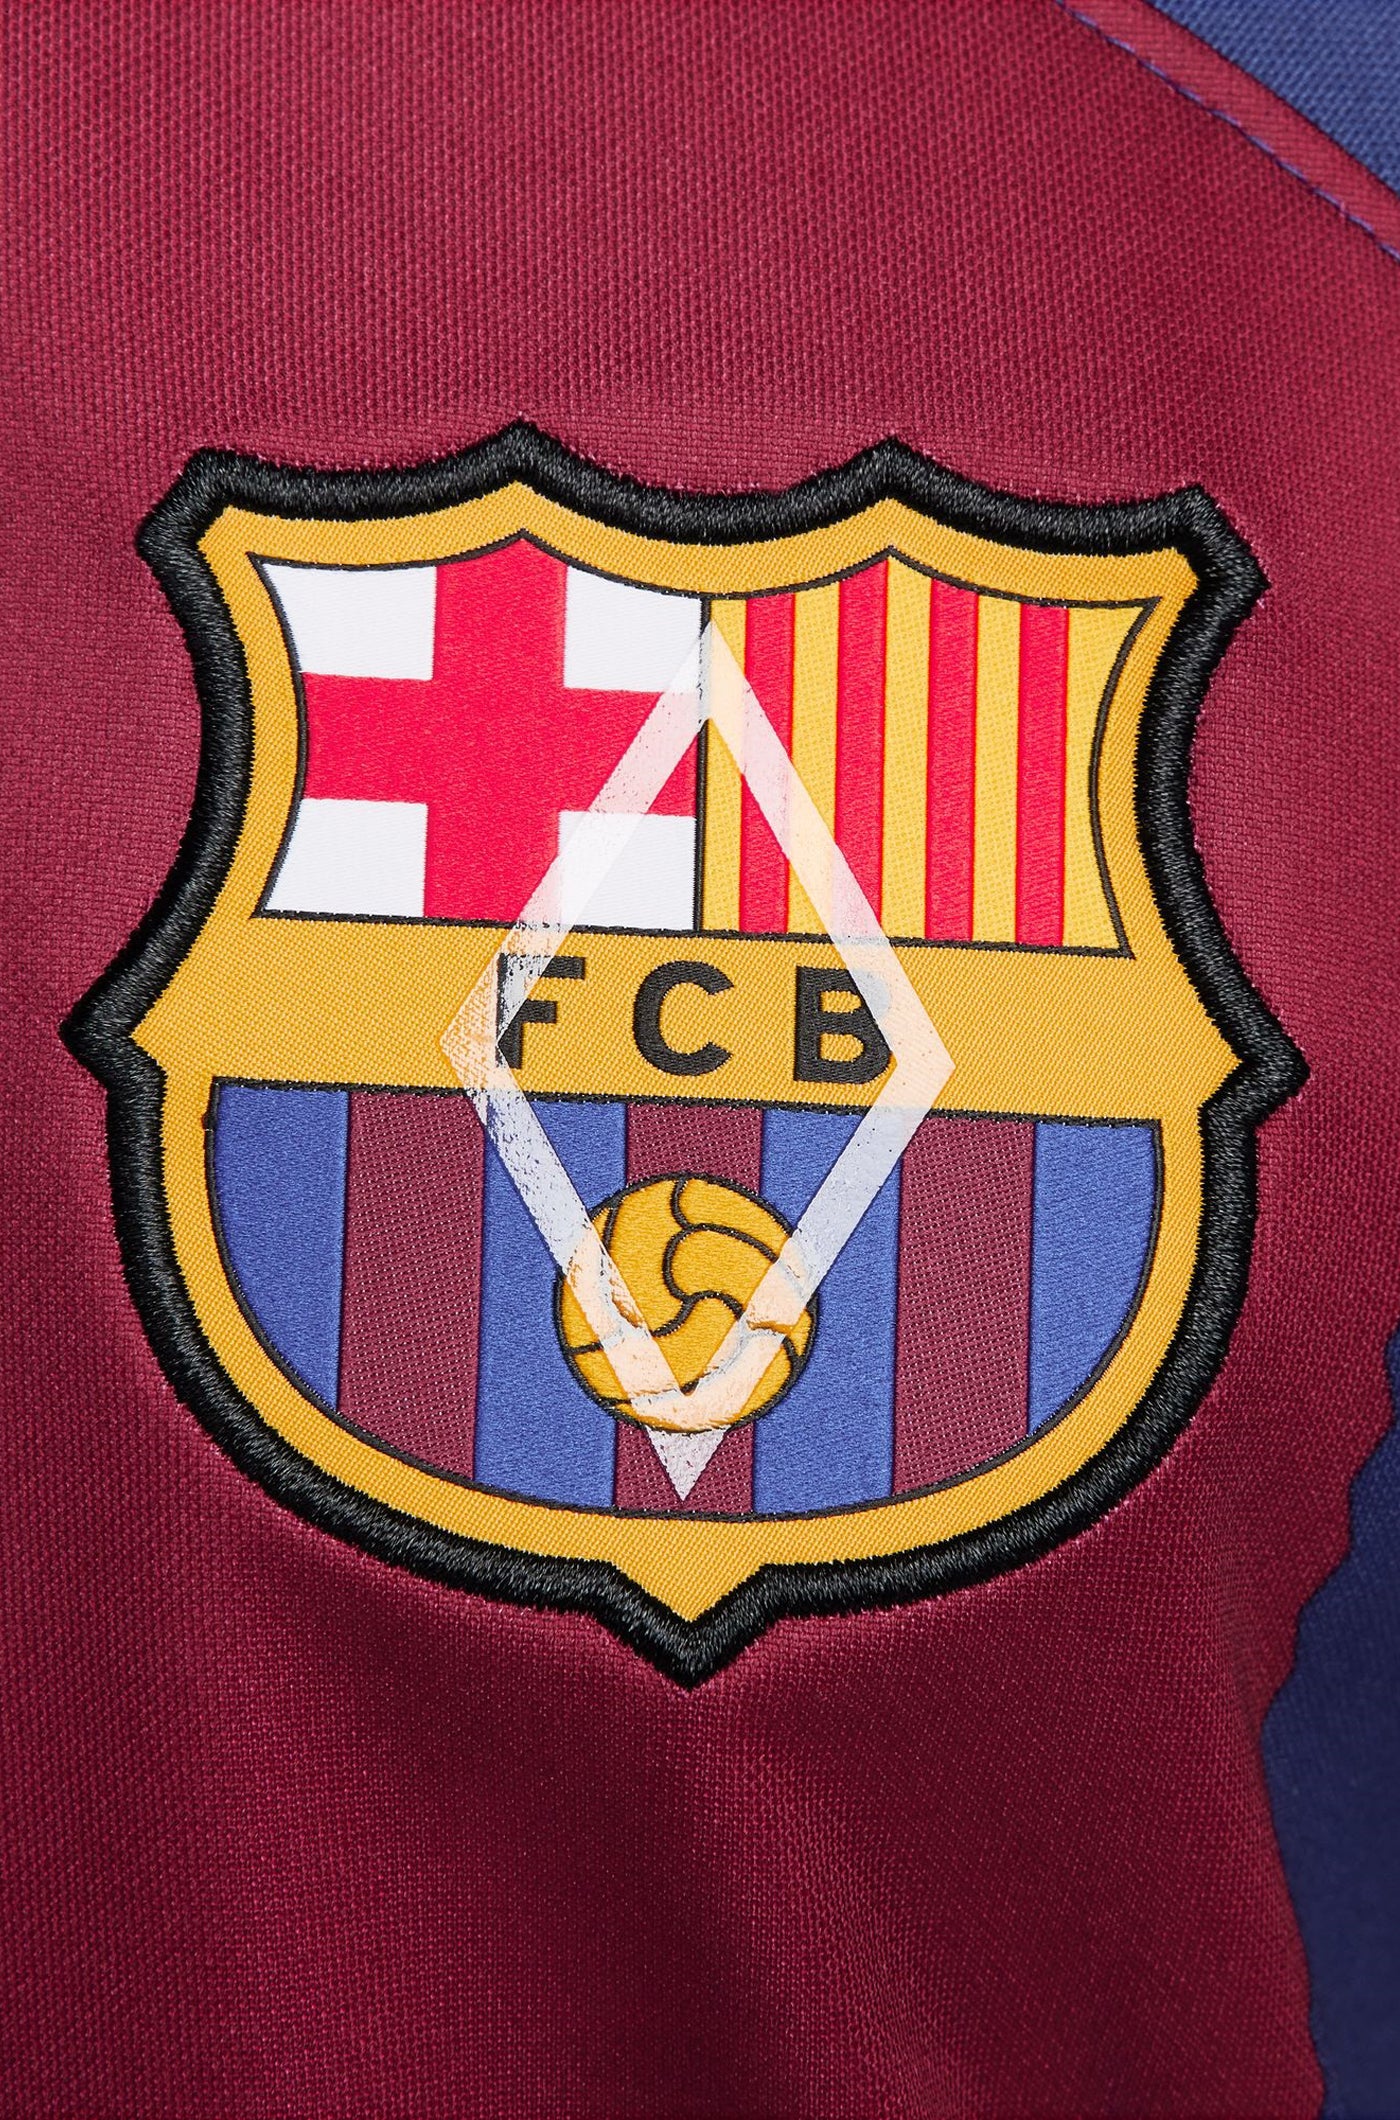 LFP Samarreta primer equipament FC Barcelona 23/24 